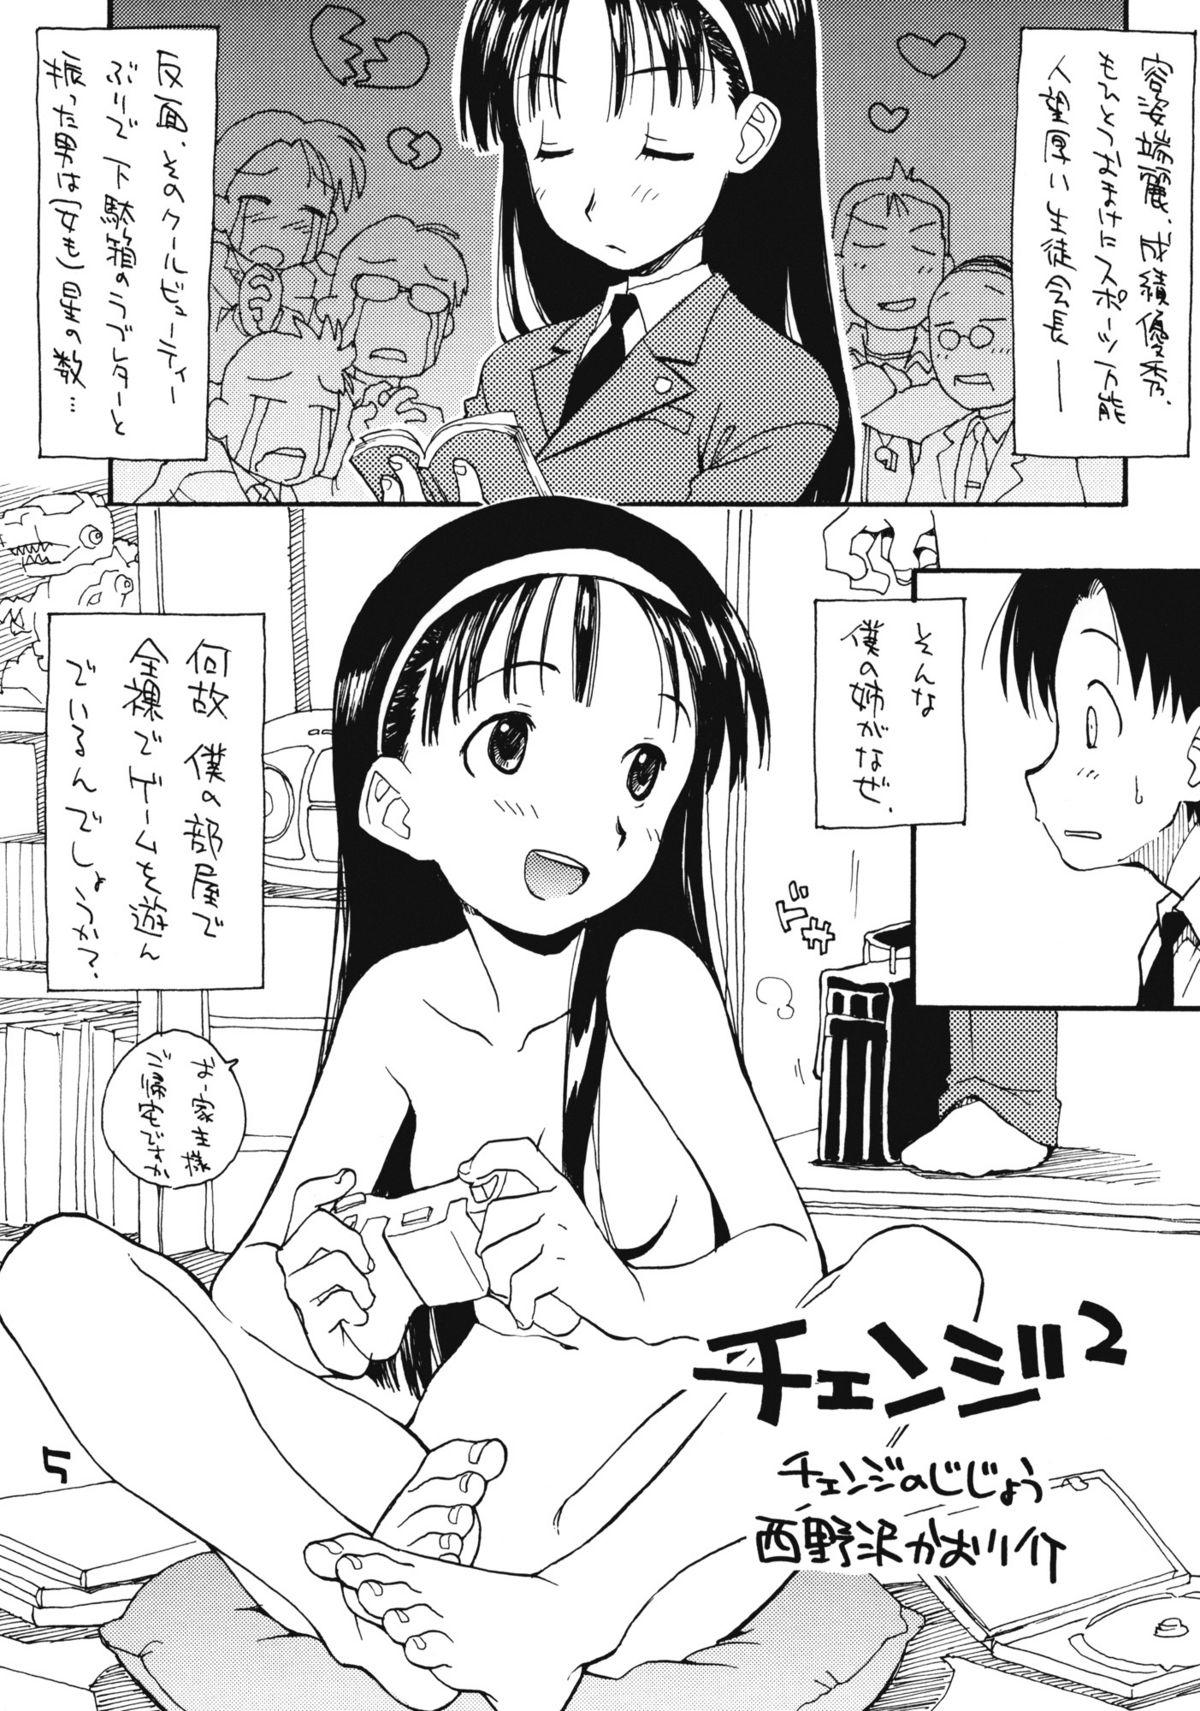 Anime N.H 4U Amature Sex - Page 4